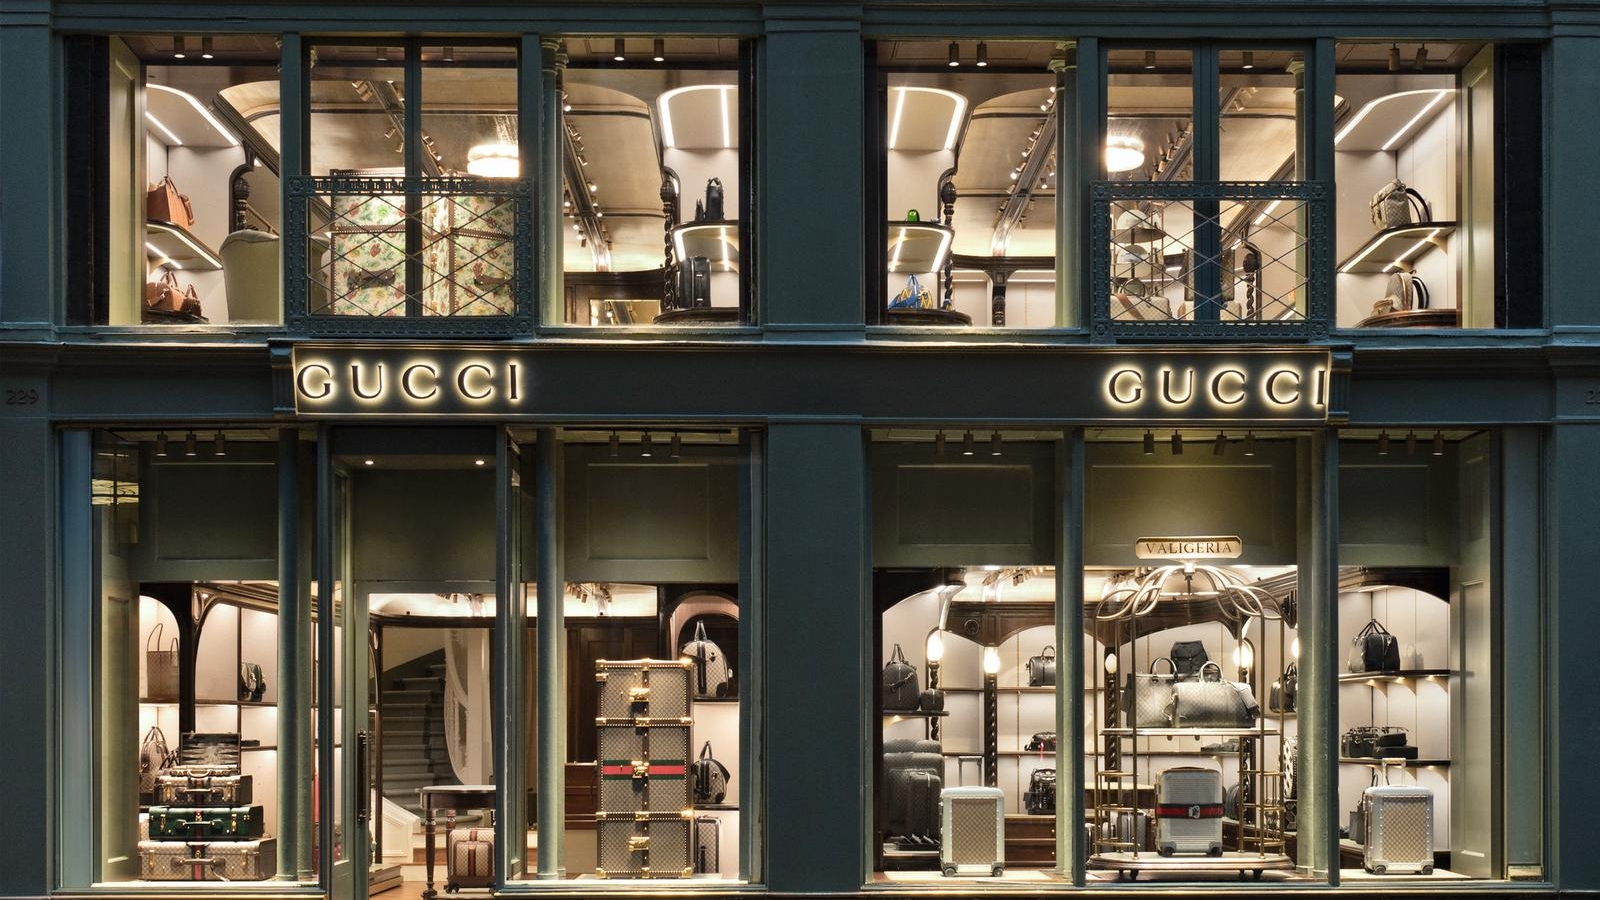 Lvmh compra il flagship di Louis Vuitton a Parigi - MilanoFinanza News